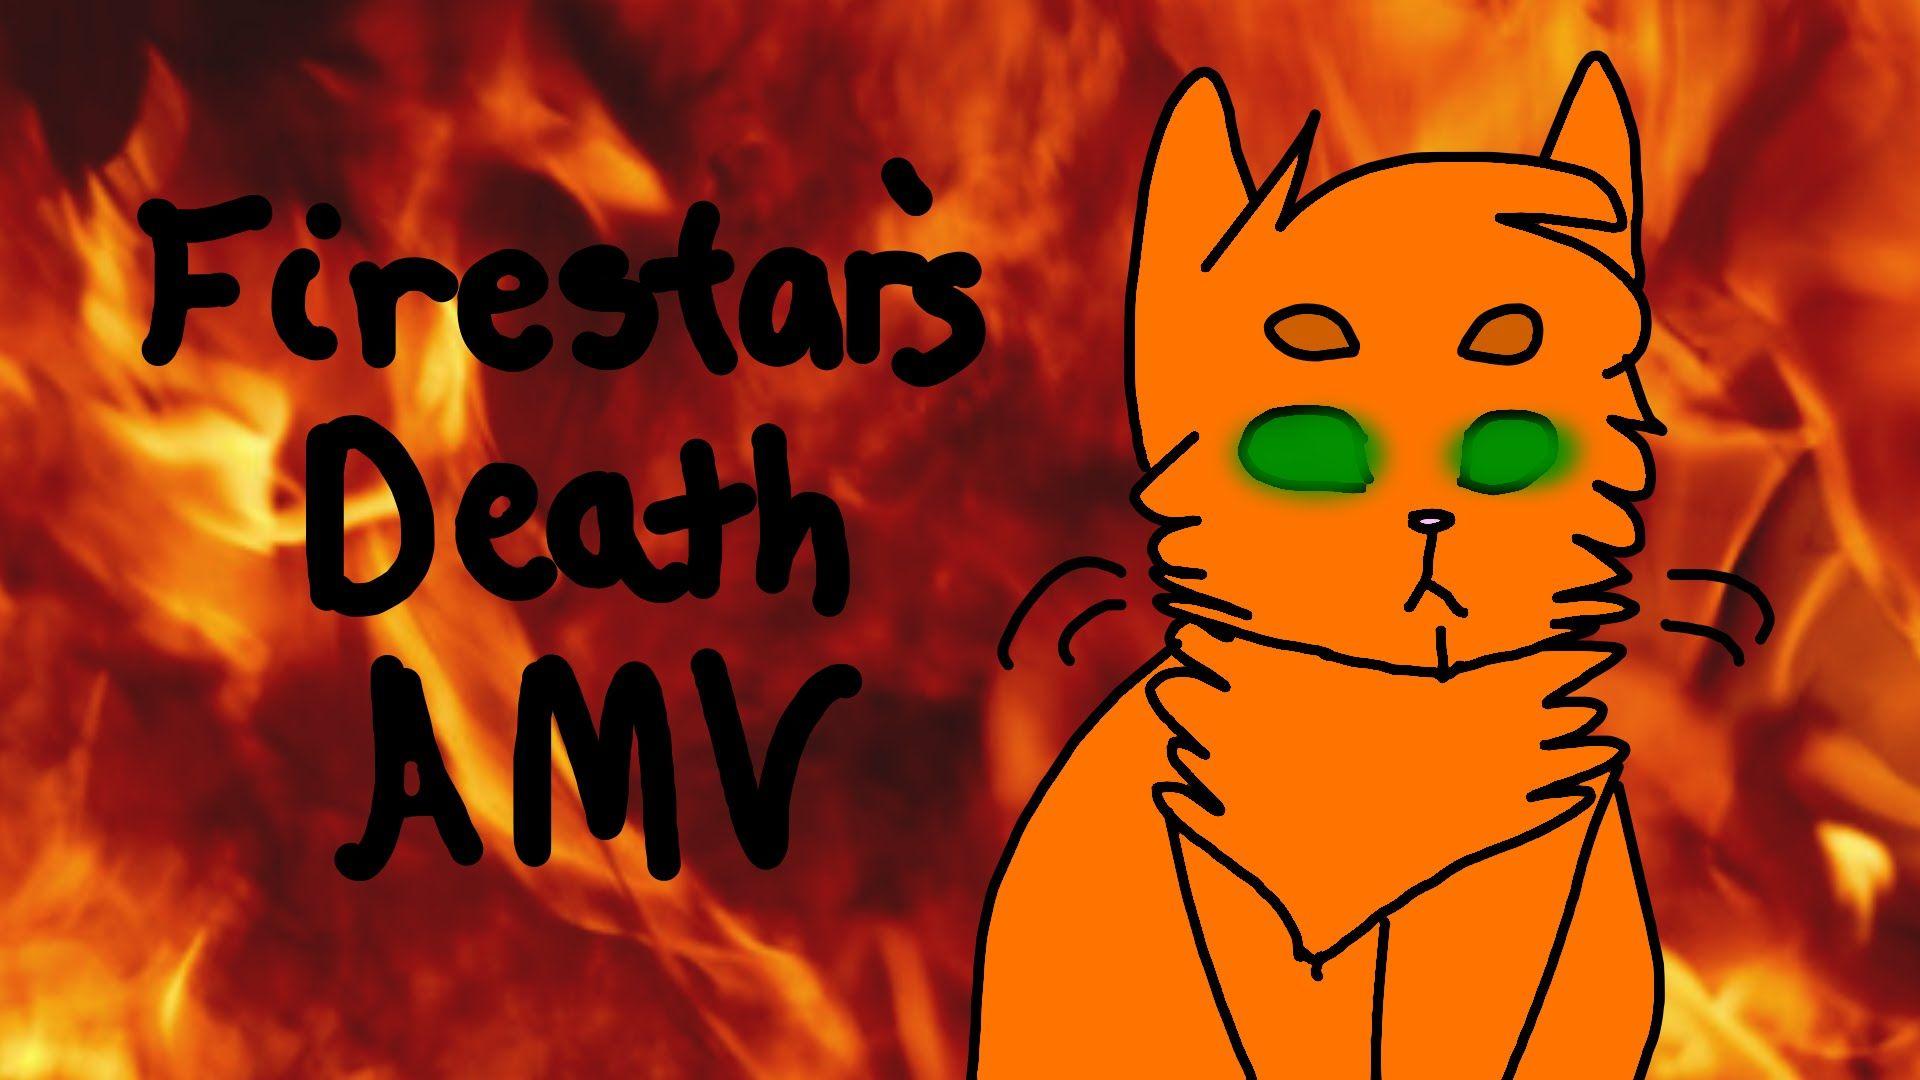 Firestar's Death AMV